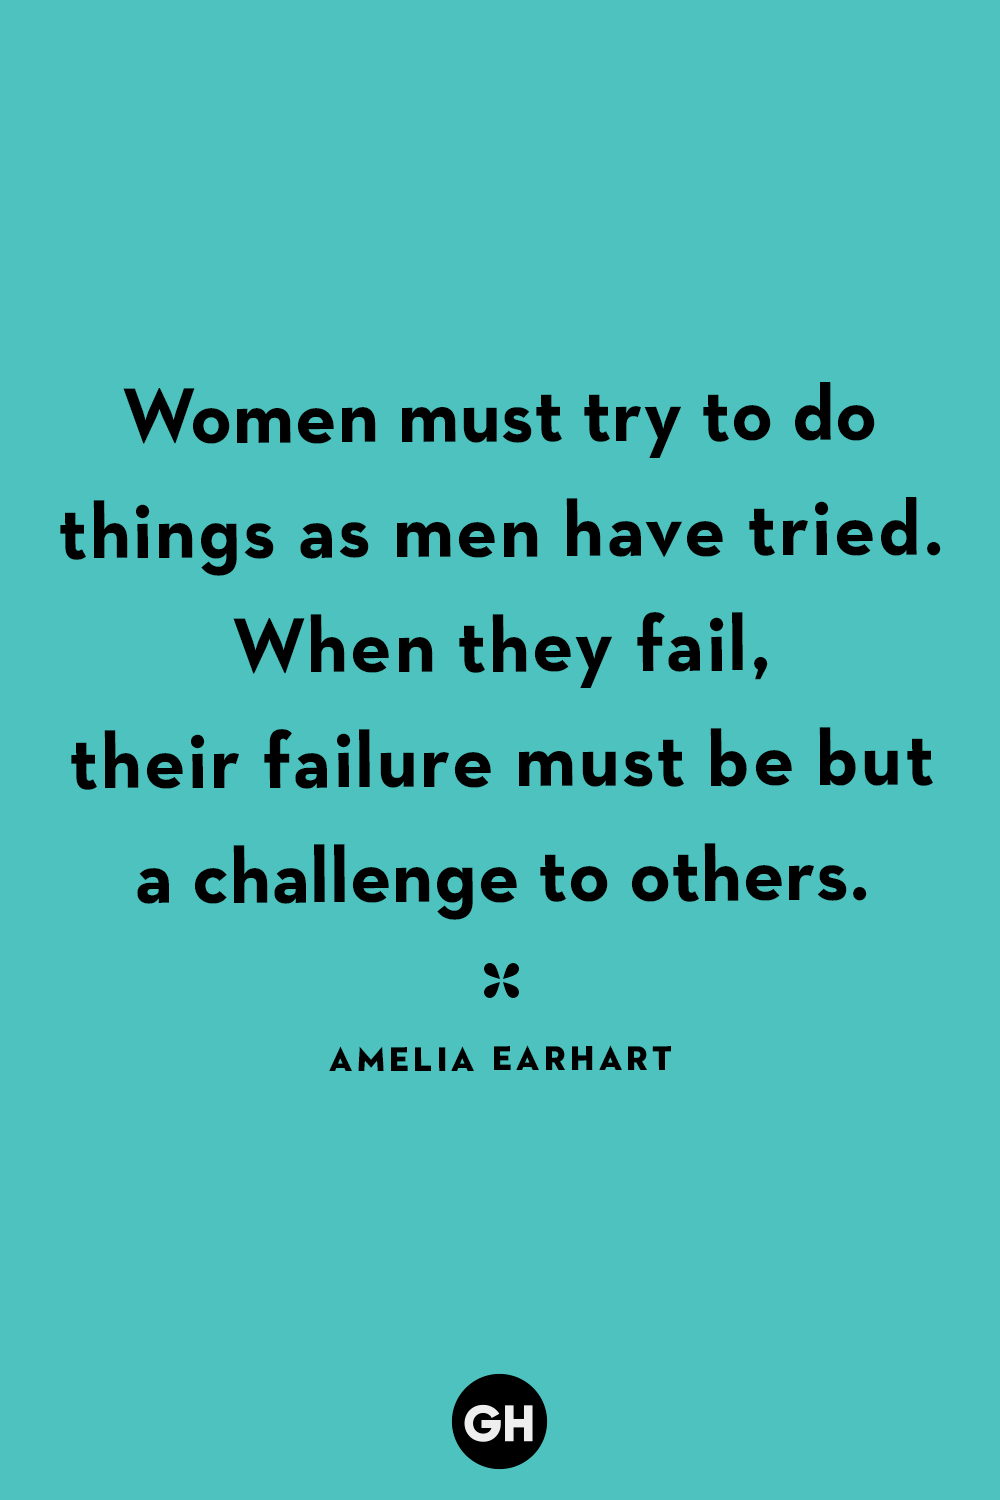 great feminist quotes